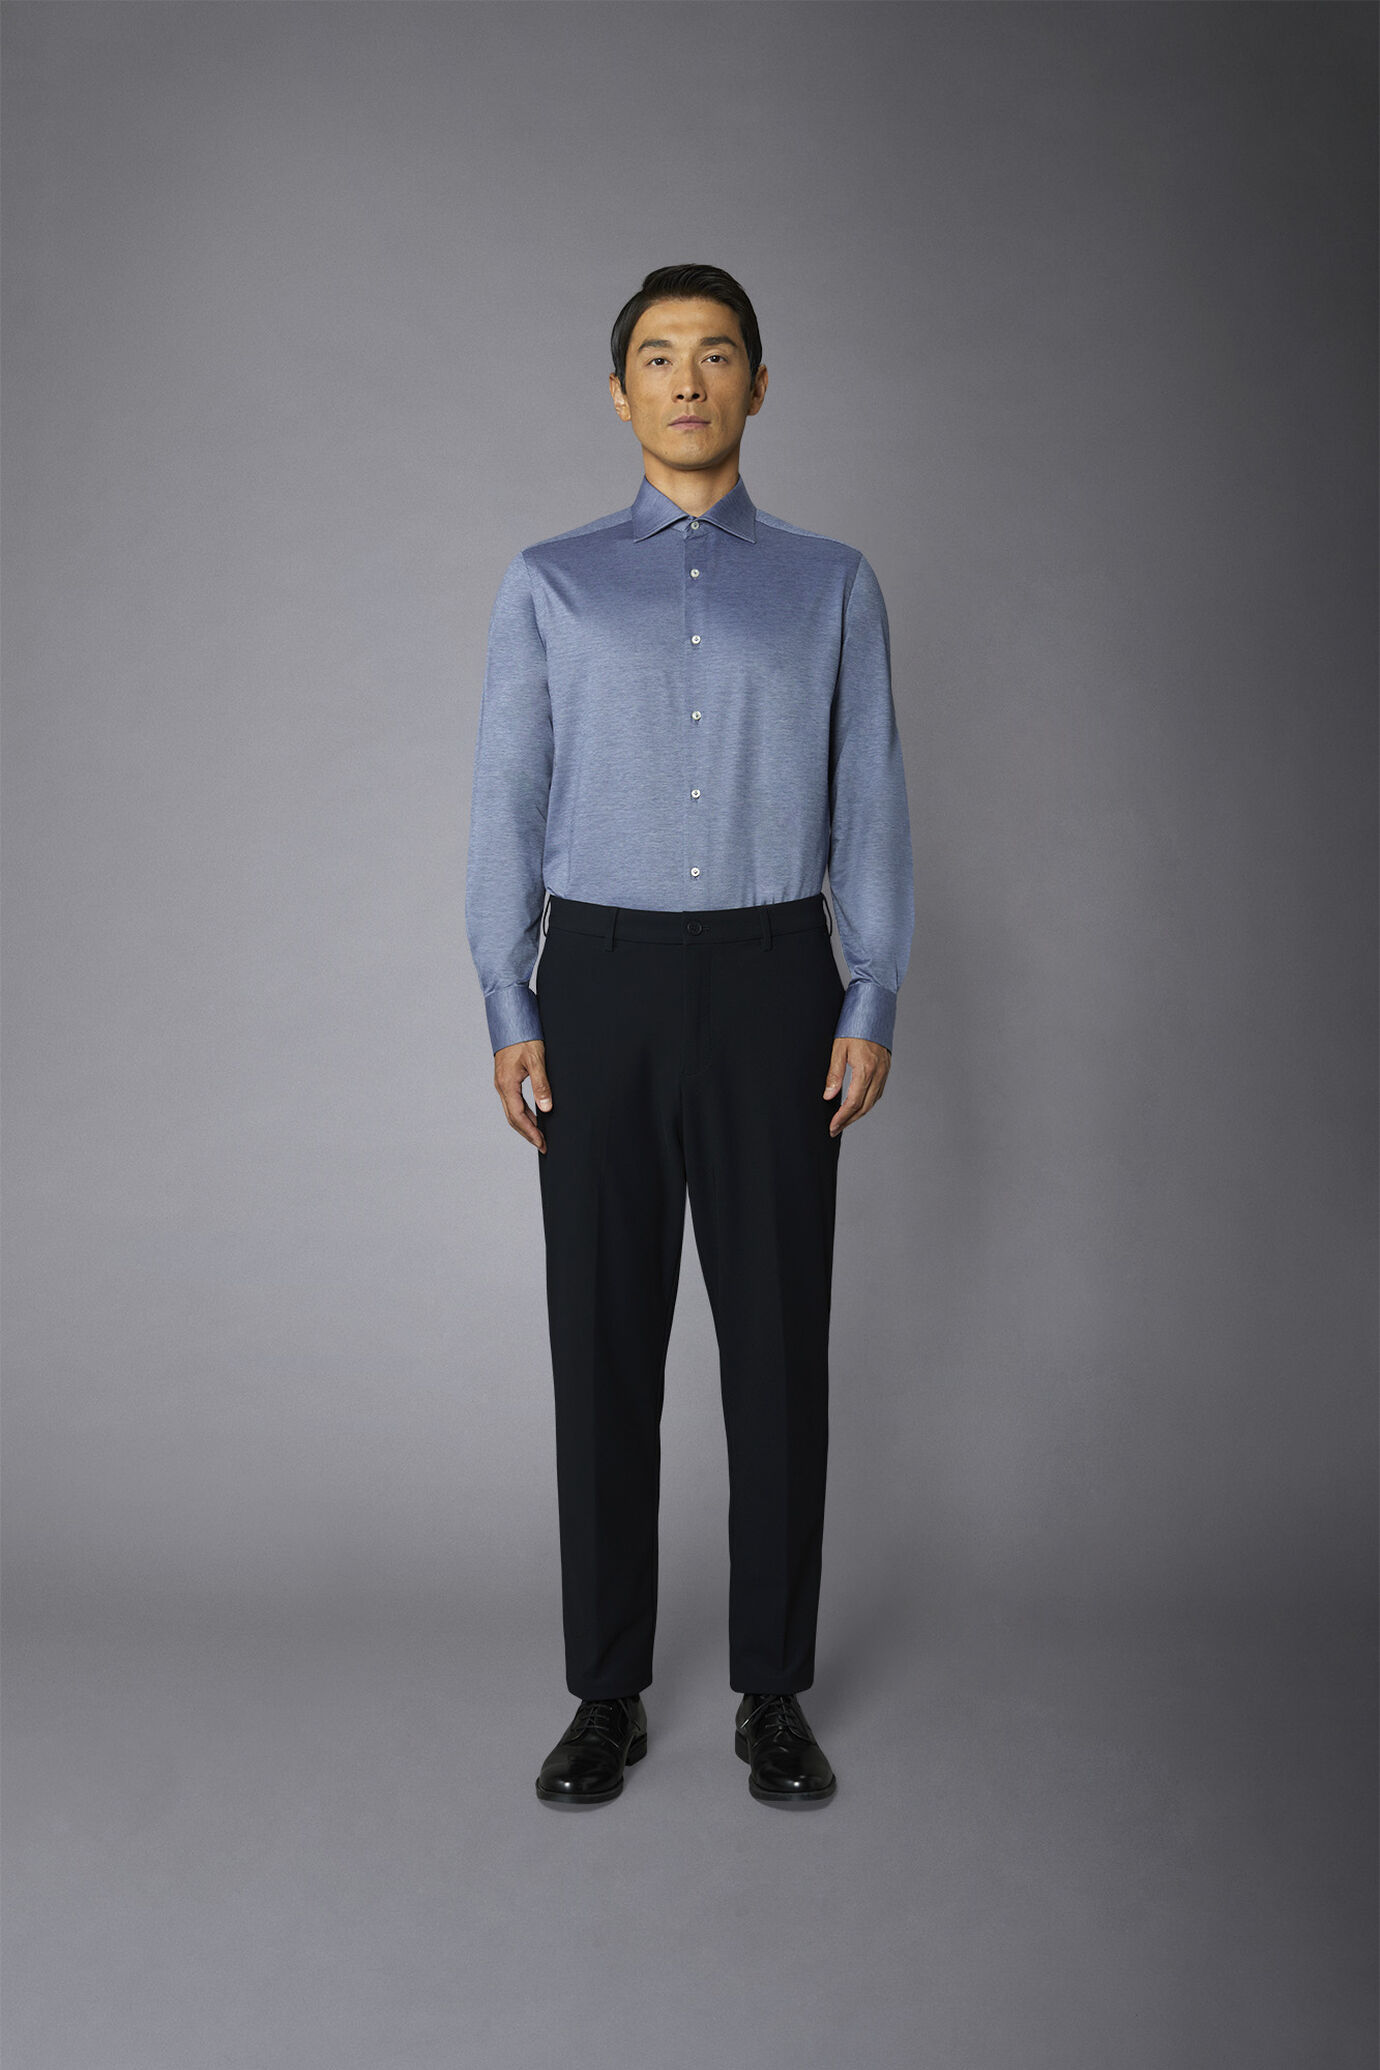 Pantalone chino uomo tessuto in nylon elasticizzato comfort fit image number 2